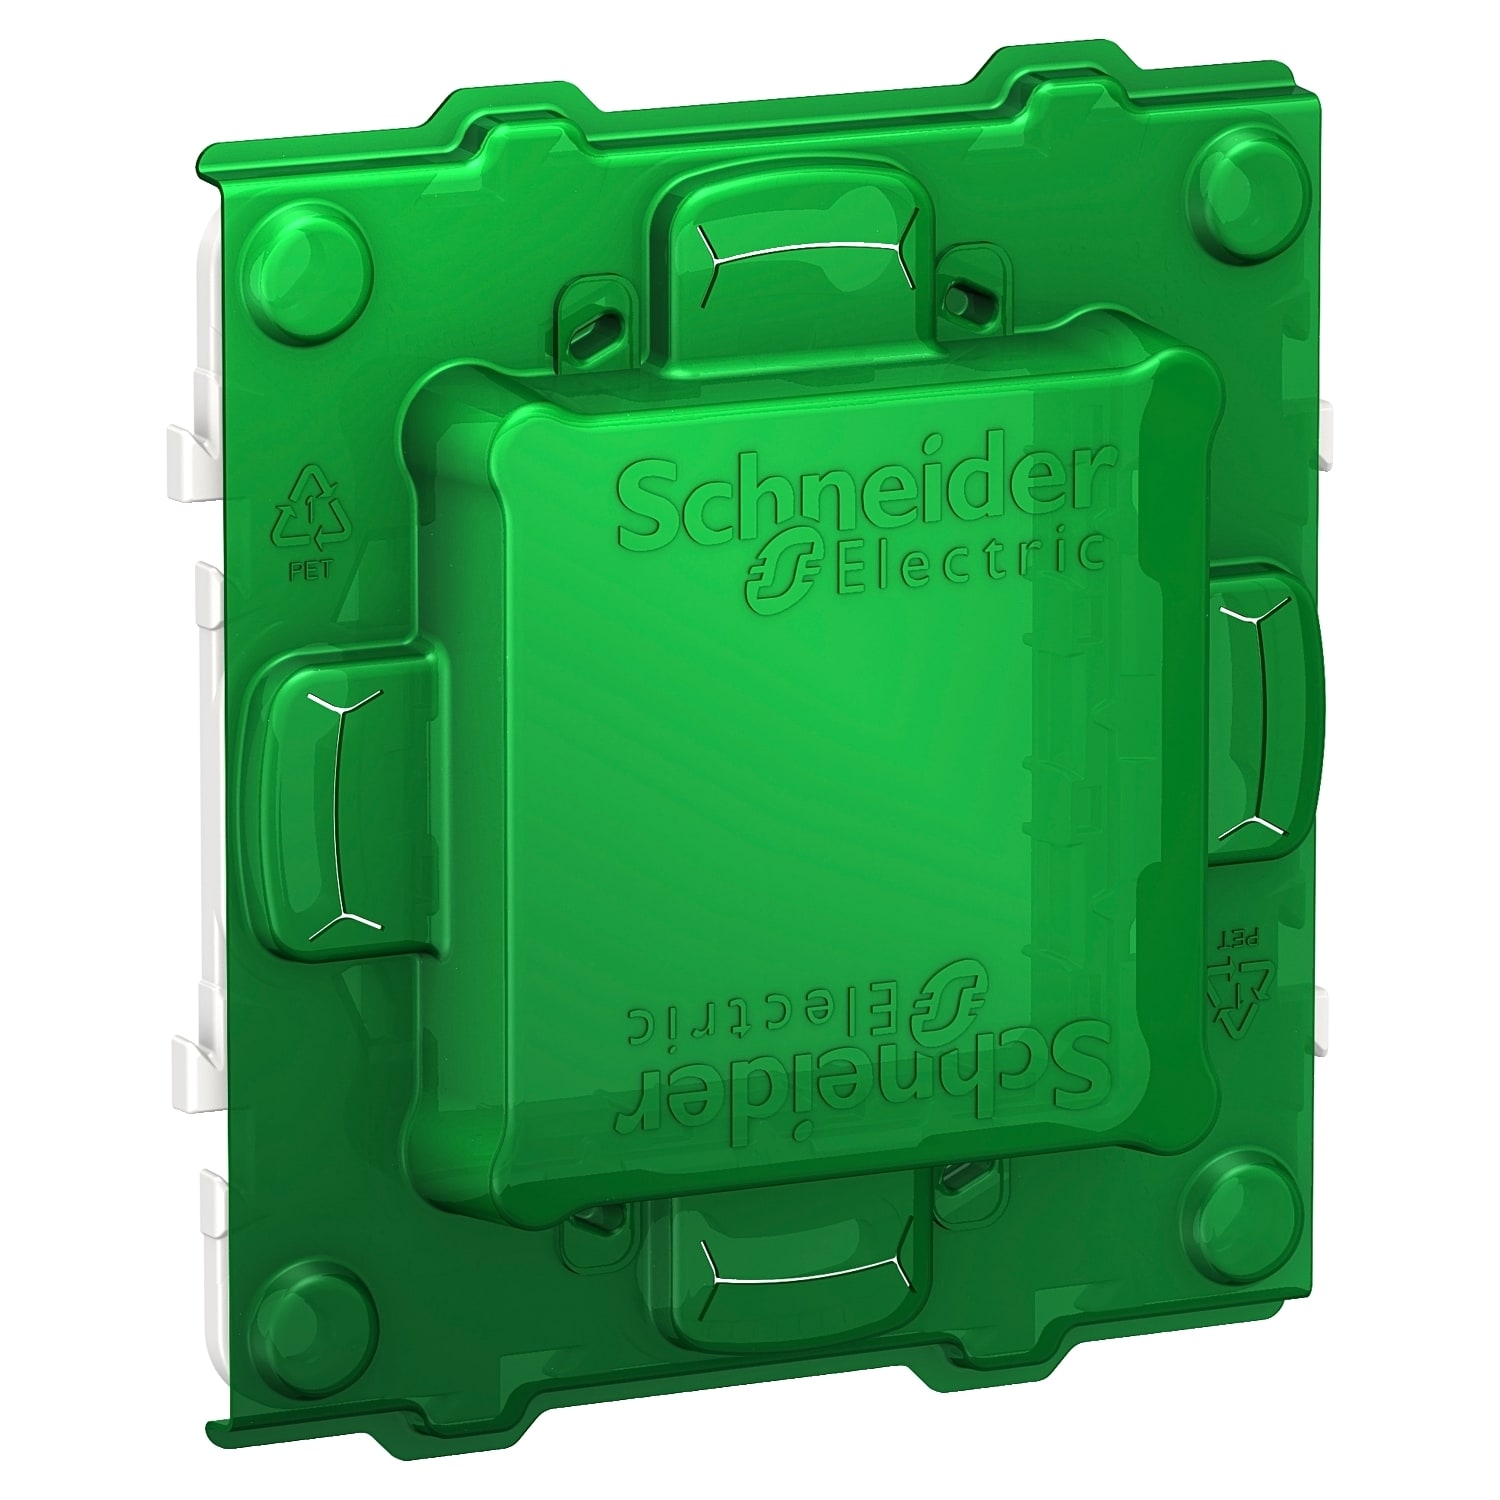 Schneider Electric - Unica - support de fixation 2 mod + protection de chantier - plastique